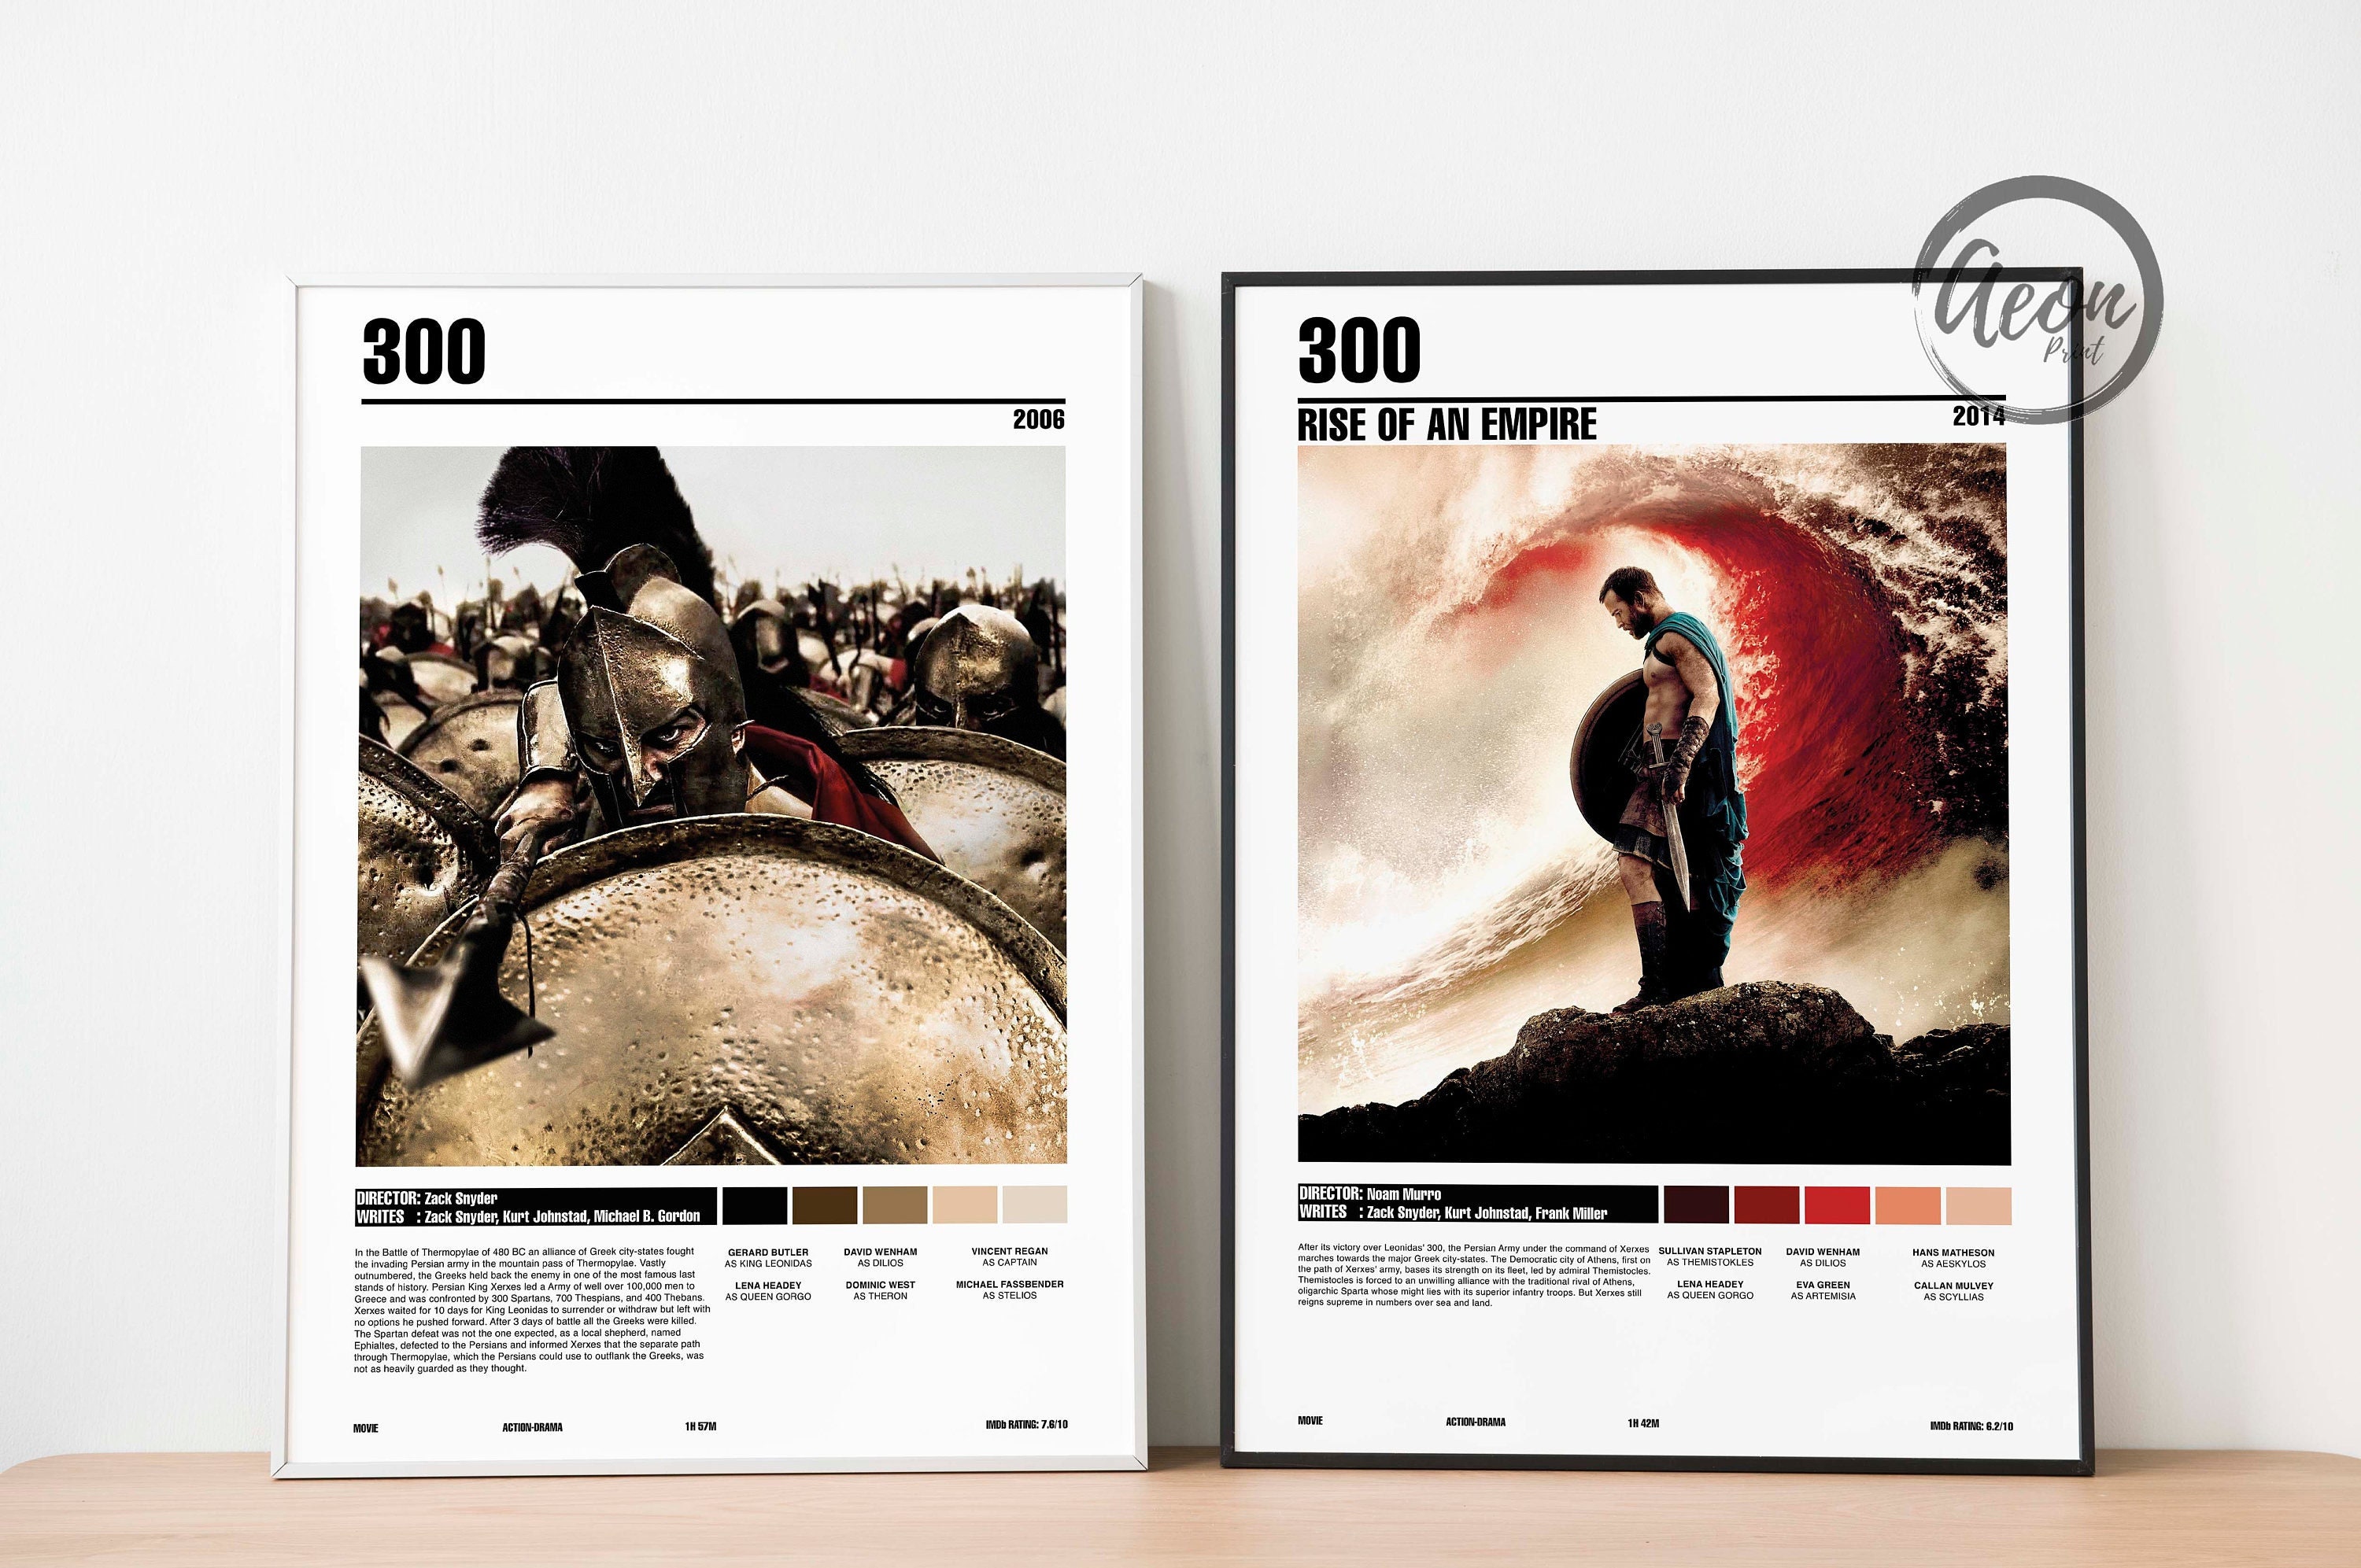 300 Spartalı 2007  300 movie, Movie posters, Full movies